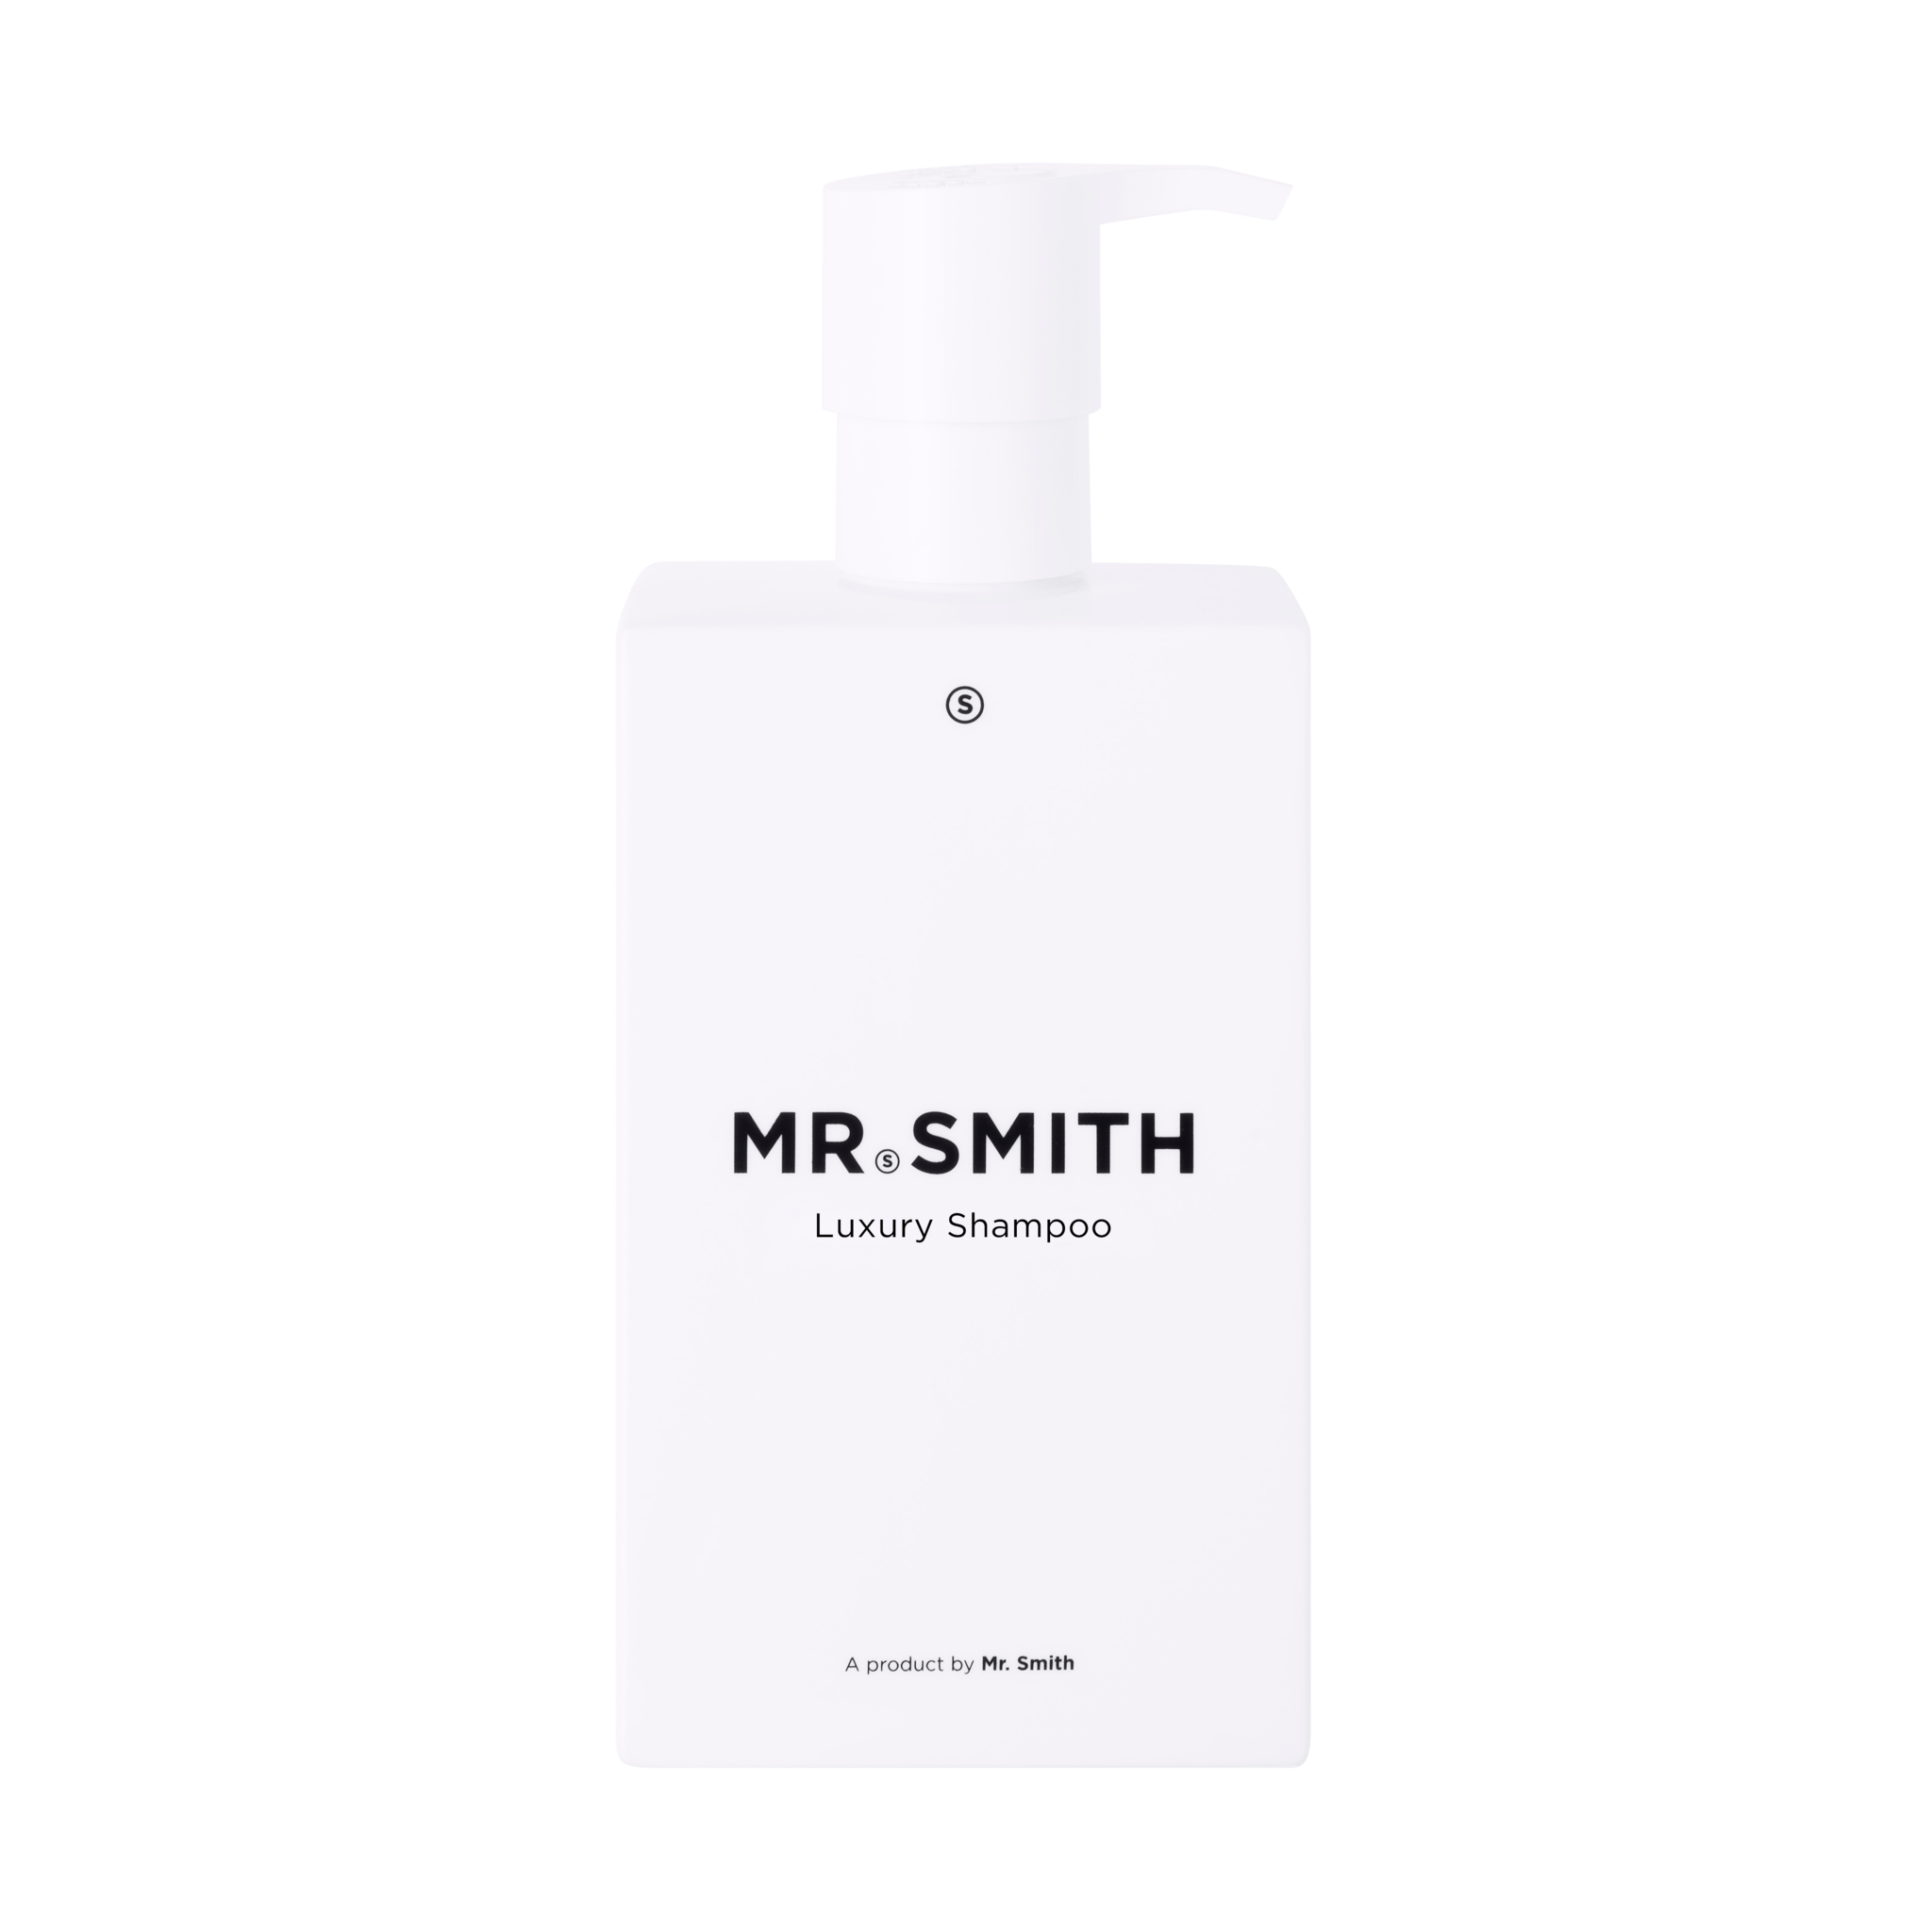 MR. SMITH Luxury Shampoo - 275 ml - doet het haar diep voeden en verzorgen